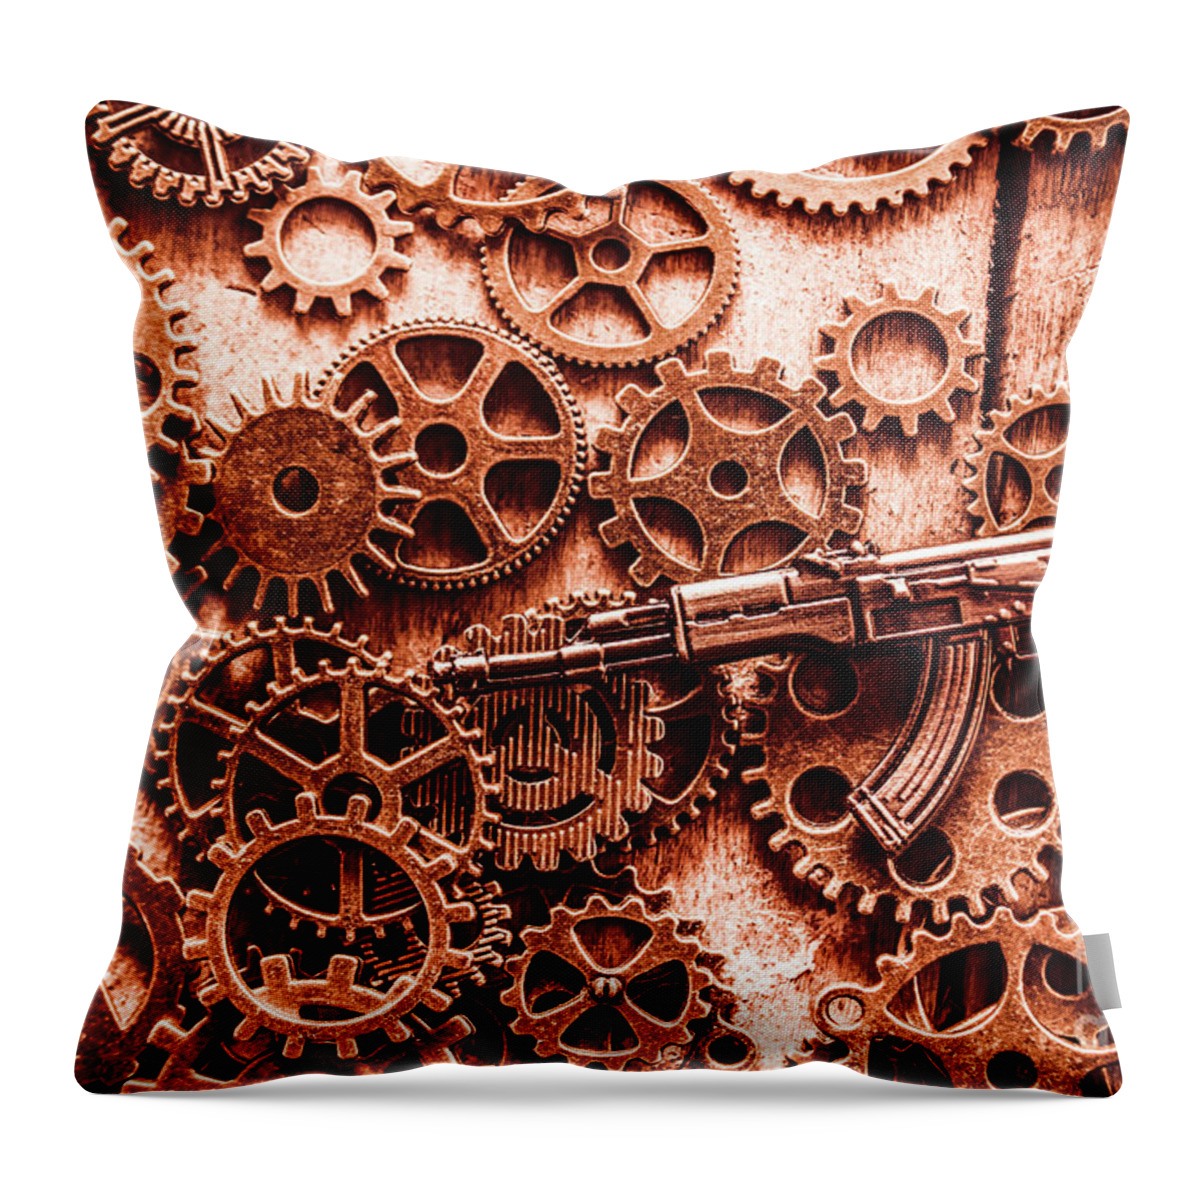 Guns Throw Pillow featuring the photograph Guns of machine mechanics by Jorgo Photography